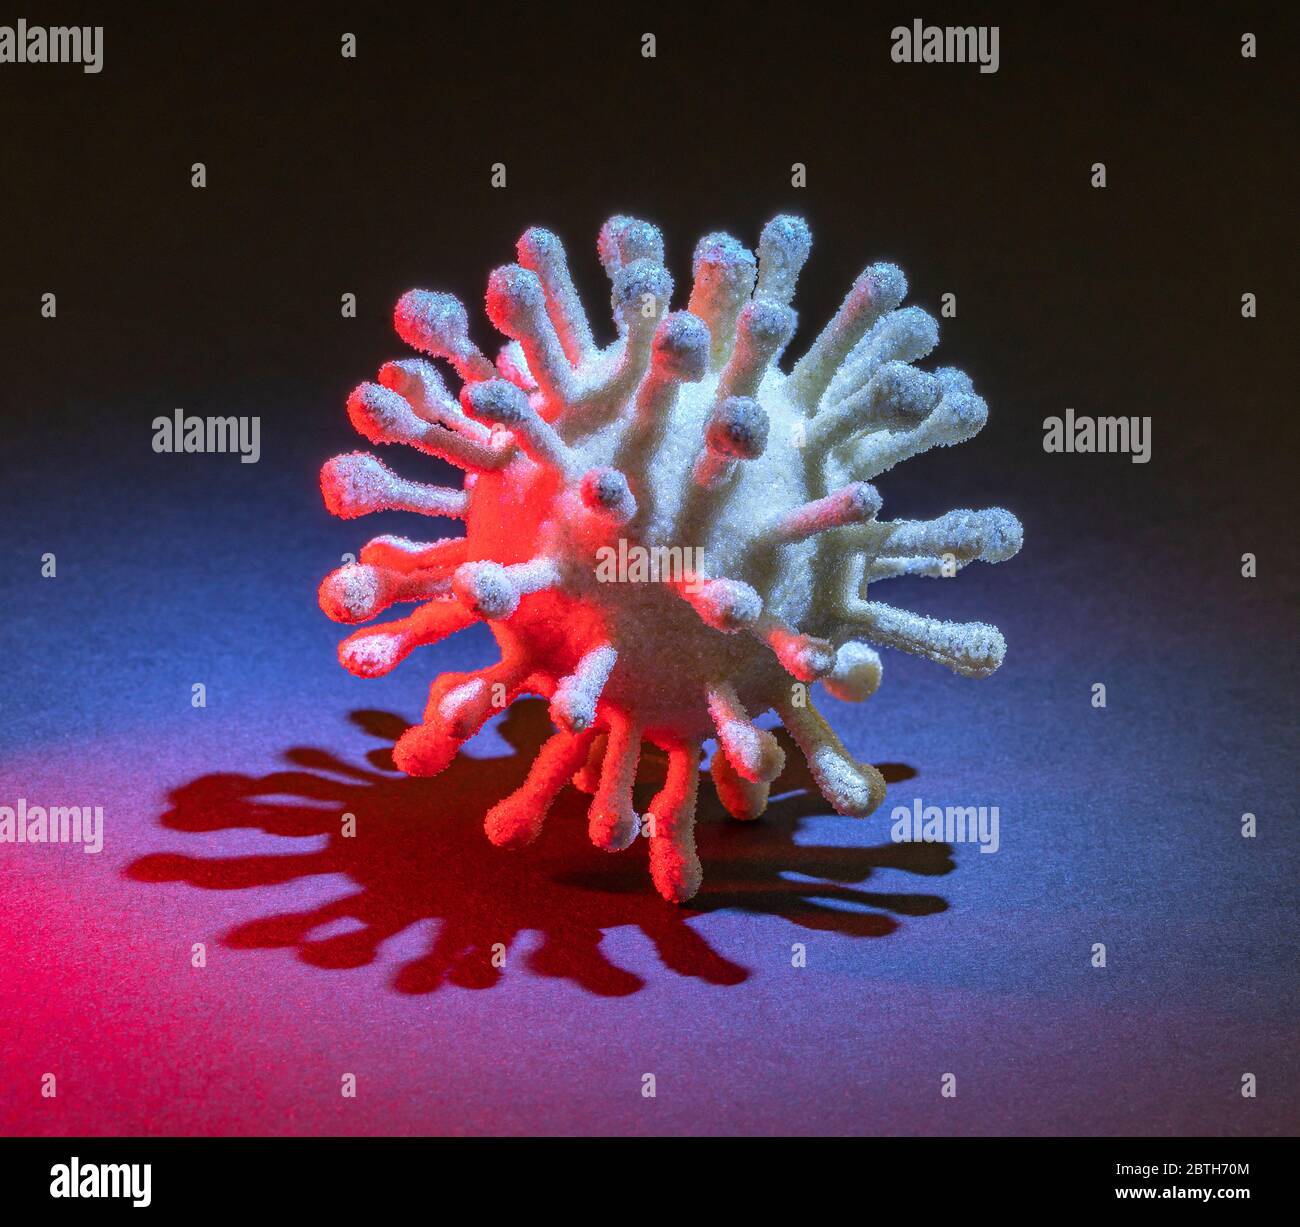 immagine di un colorato virus simbolico illuminato in scuro retro Foto Stock